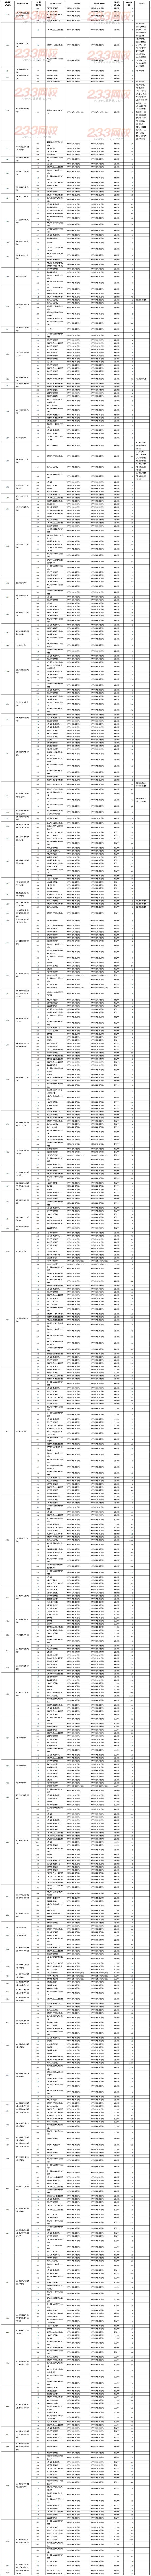 山西省2013年成人高校招生录取征报志愿公告第3号